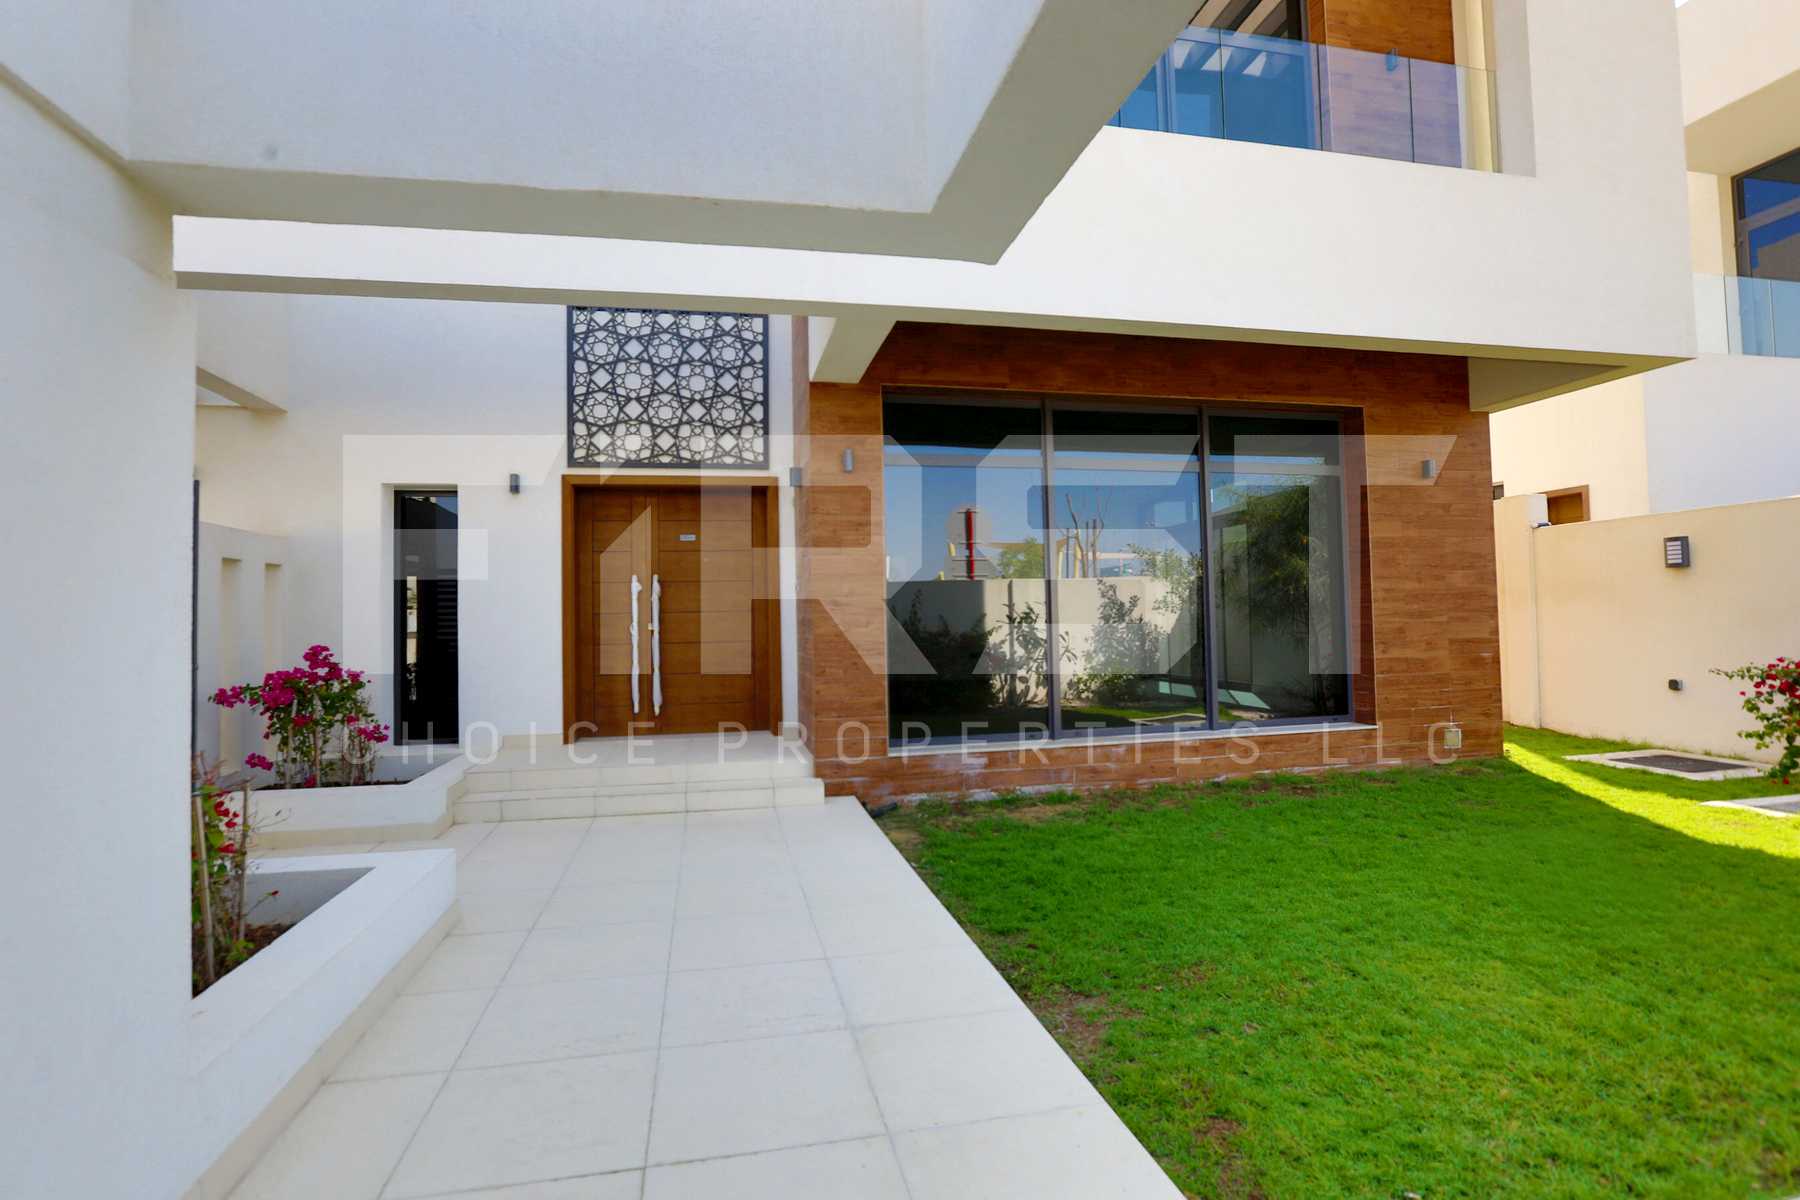 External Photo of 4 Bedroom Villa in West Yas Yas Island Abu Dhabi UAE (16).jpg